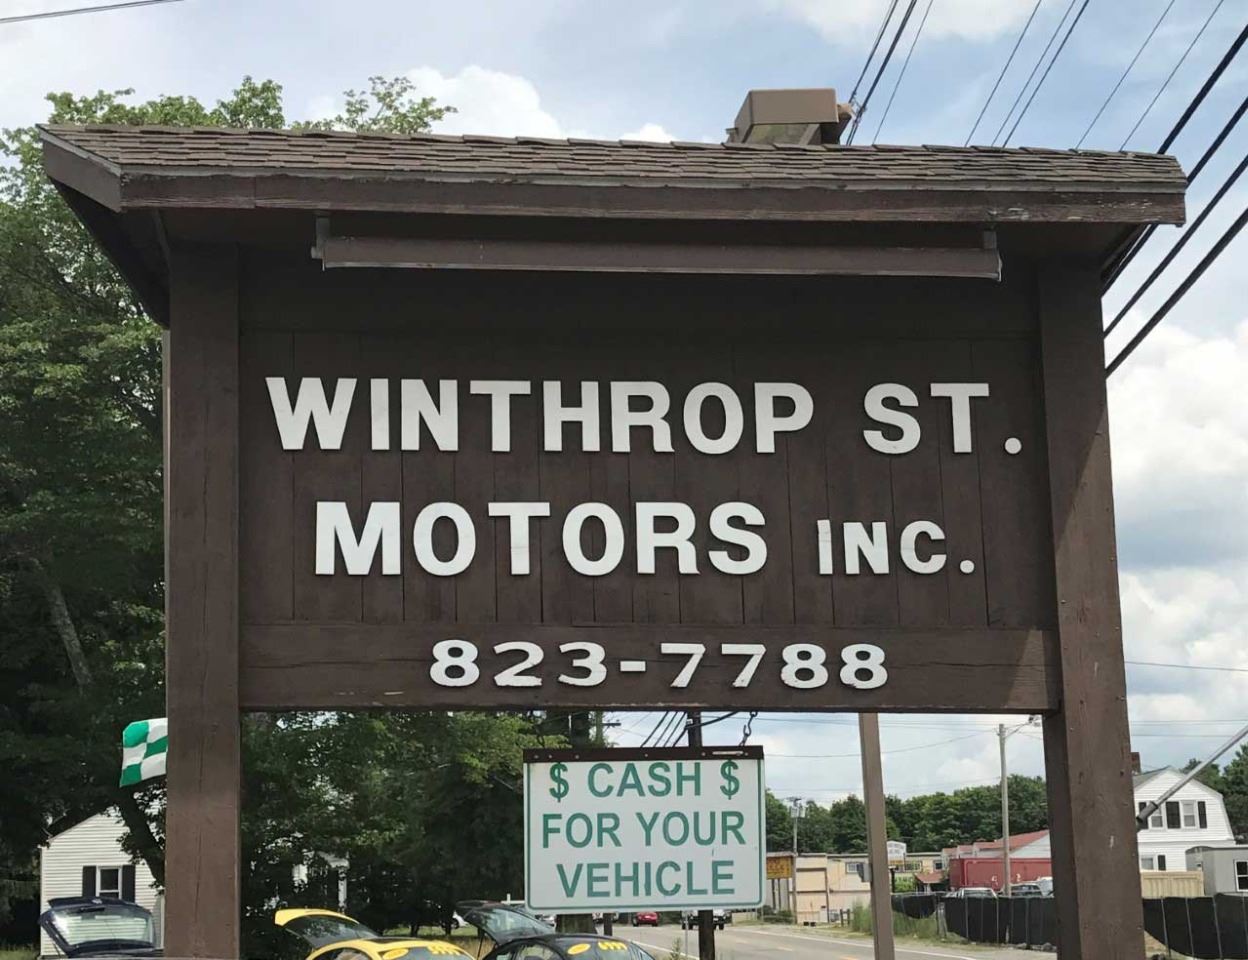 Winthrop St Motors Inc